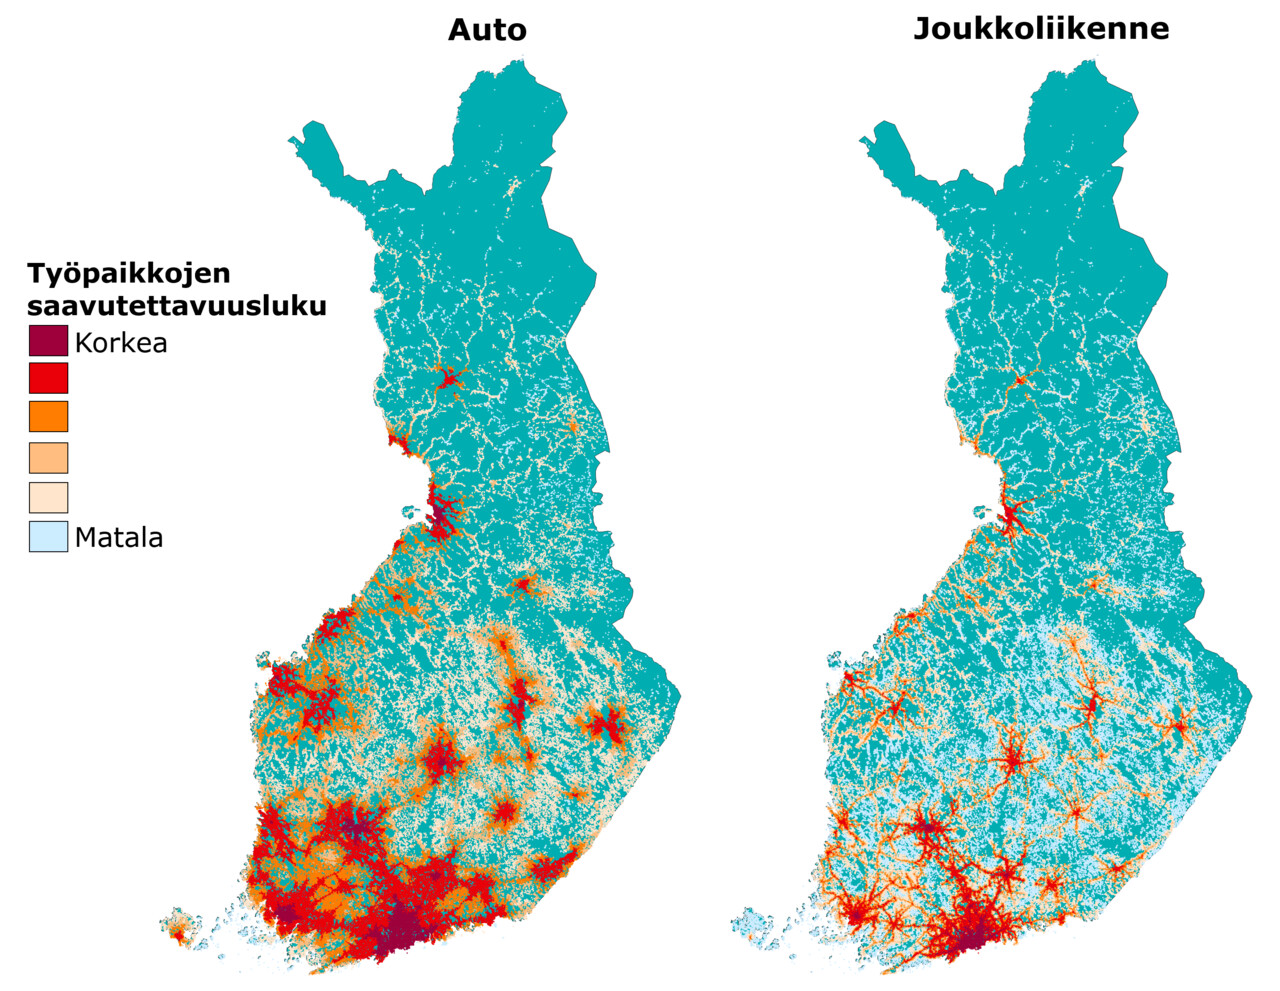 Kuvassa kaksi Suomen karttaa, joissa esitetty työpaikkojen saavutettavuus henkilöautolla ja joukkoliikenteellä vetovoimamallilla arvioituna